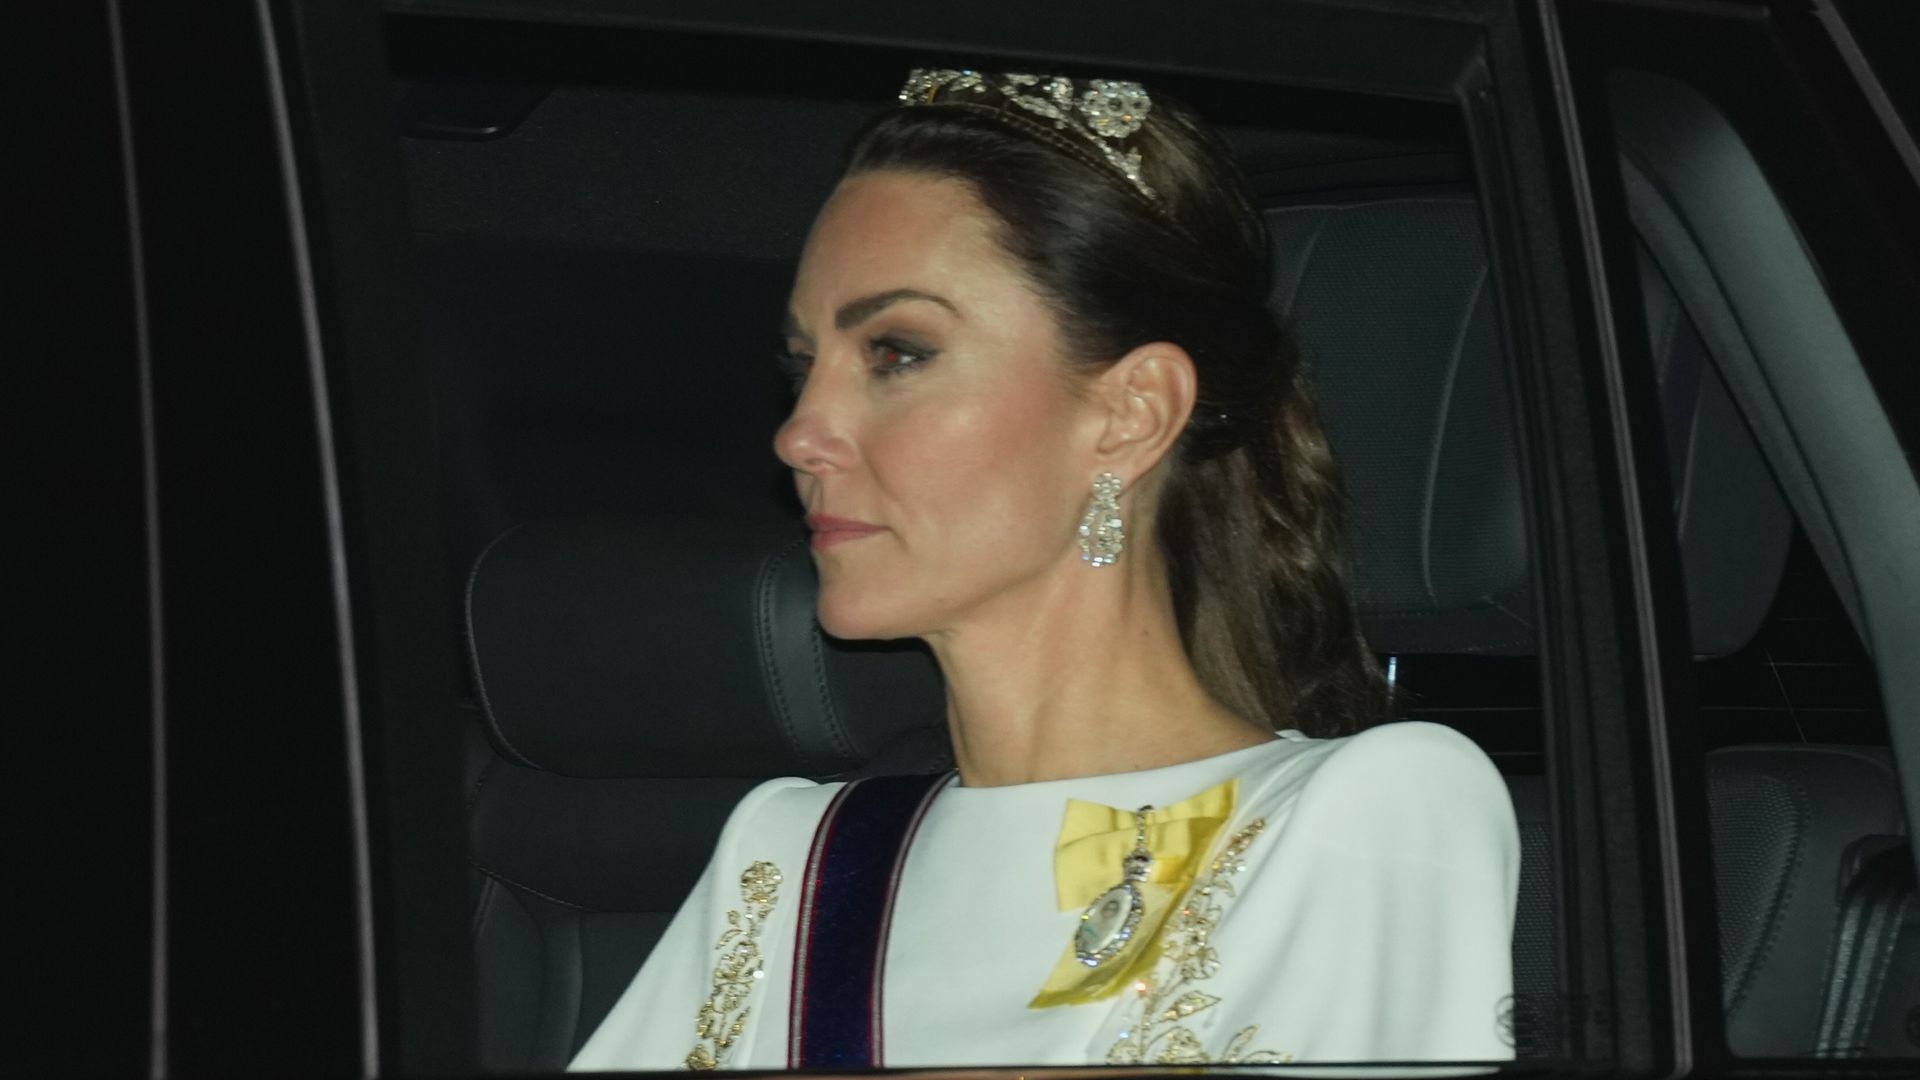 Princess Kate wore the Strathmore Rose Tiara